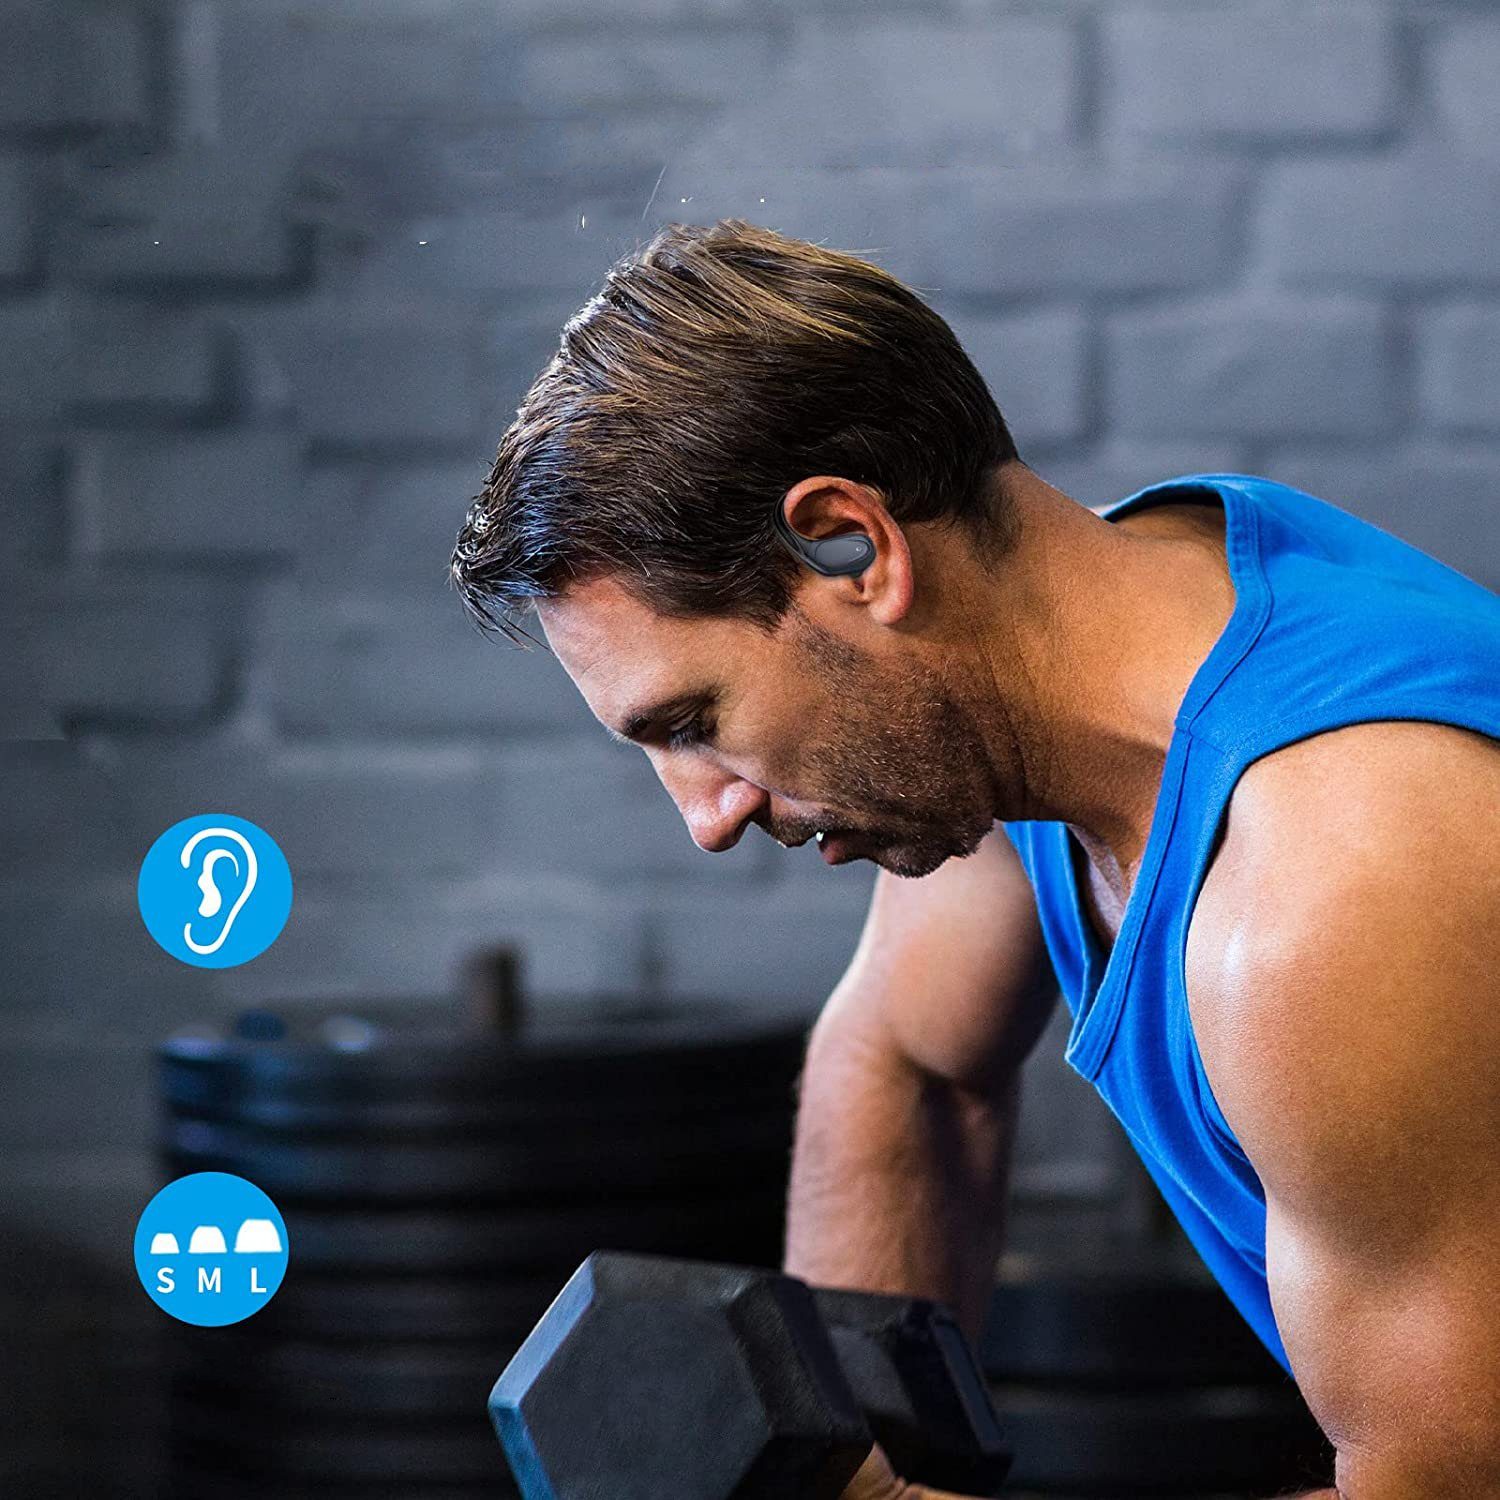 Sport, Bluetooth Ladefach Kopfhörer GelldG Anzeige, LED Ear In 5.1 Bluetooth-Kopfhörer Kopfhörer